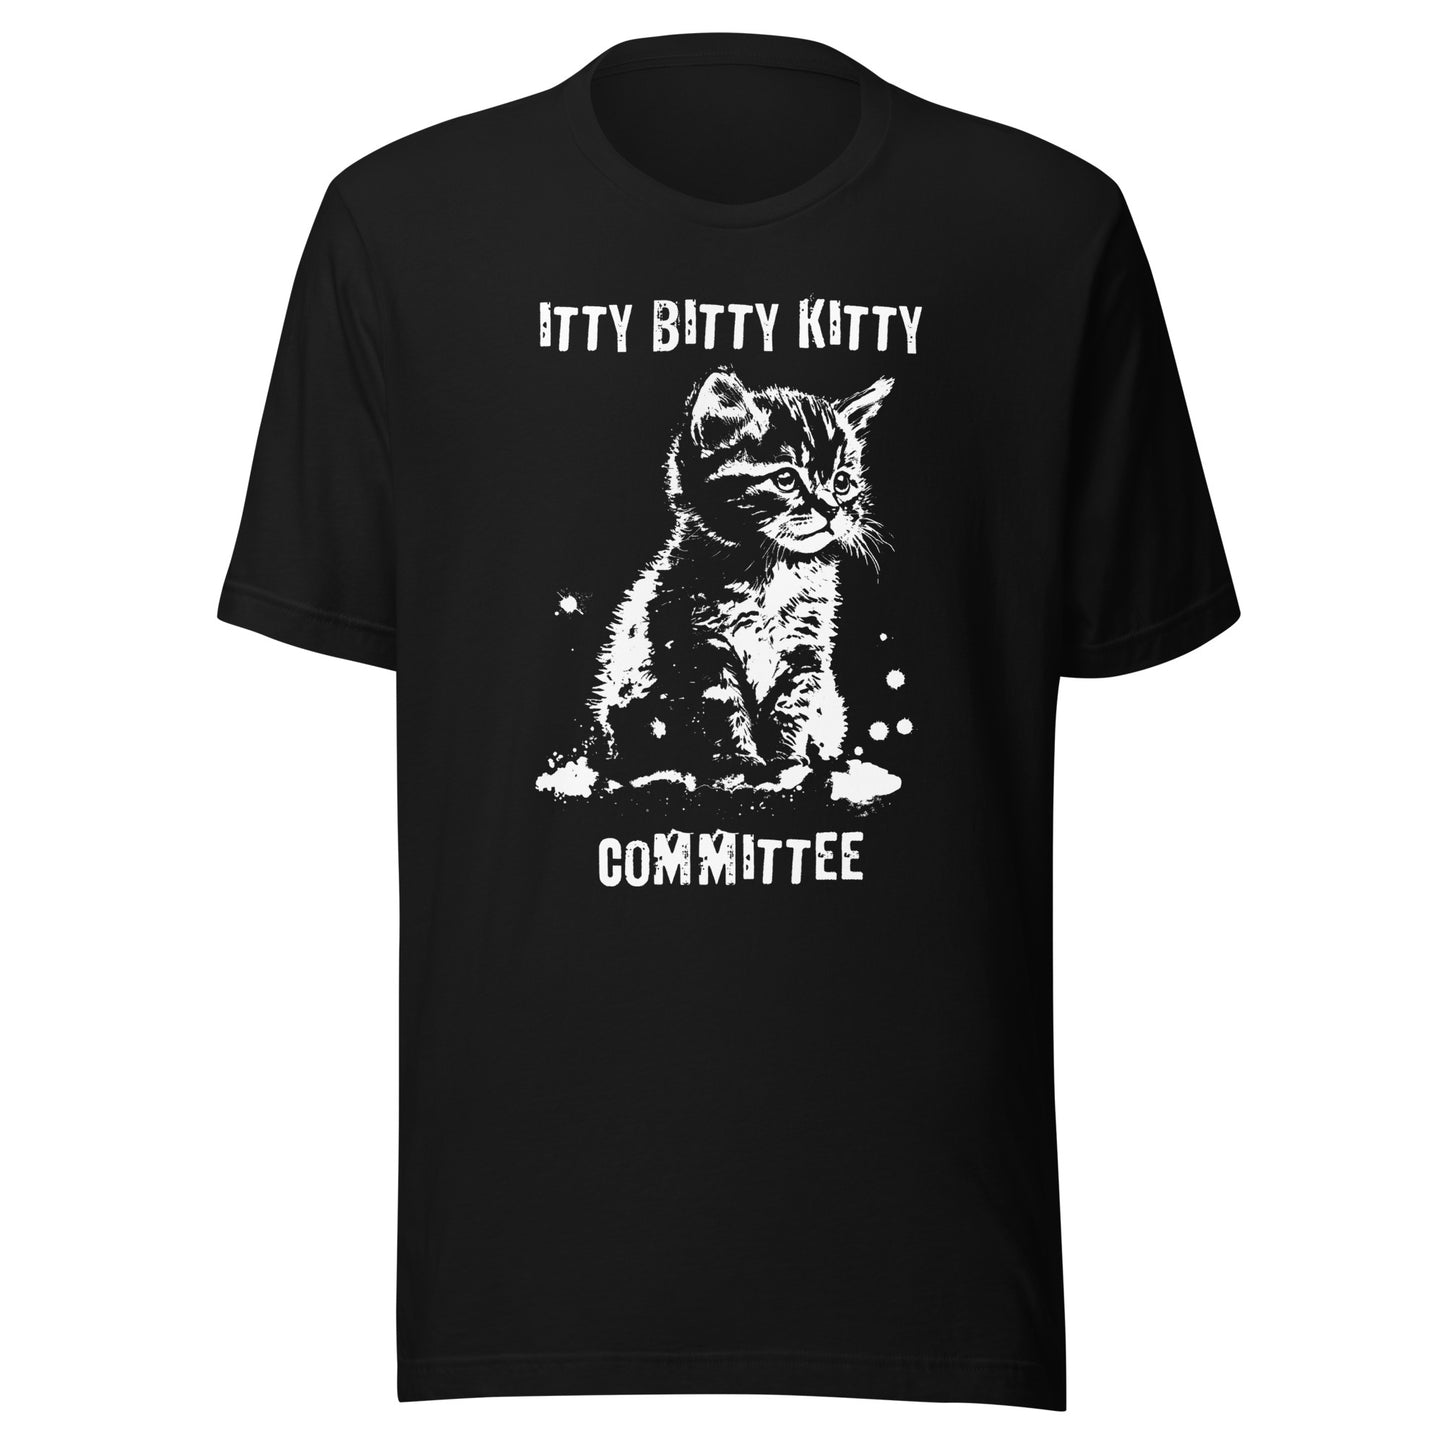 Itty Bitty Kitty Committee Unisex Shirt